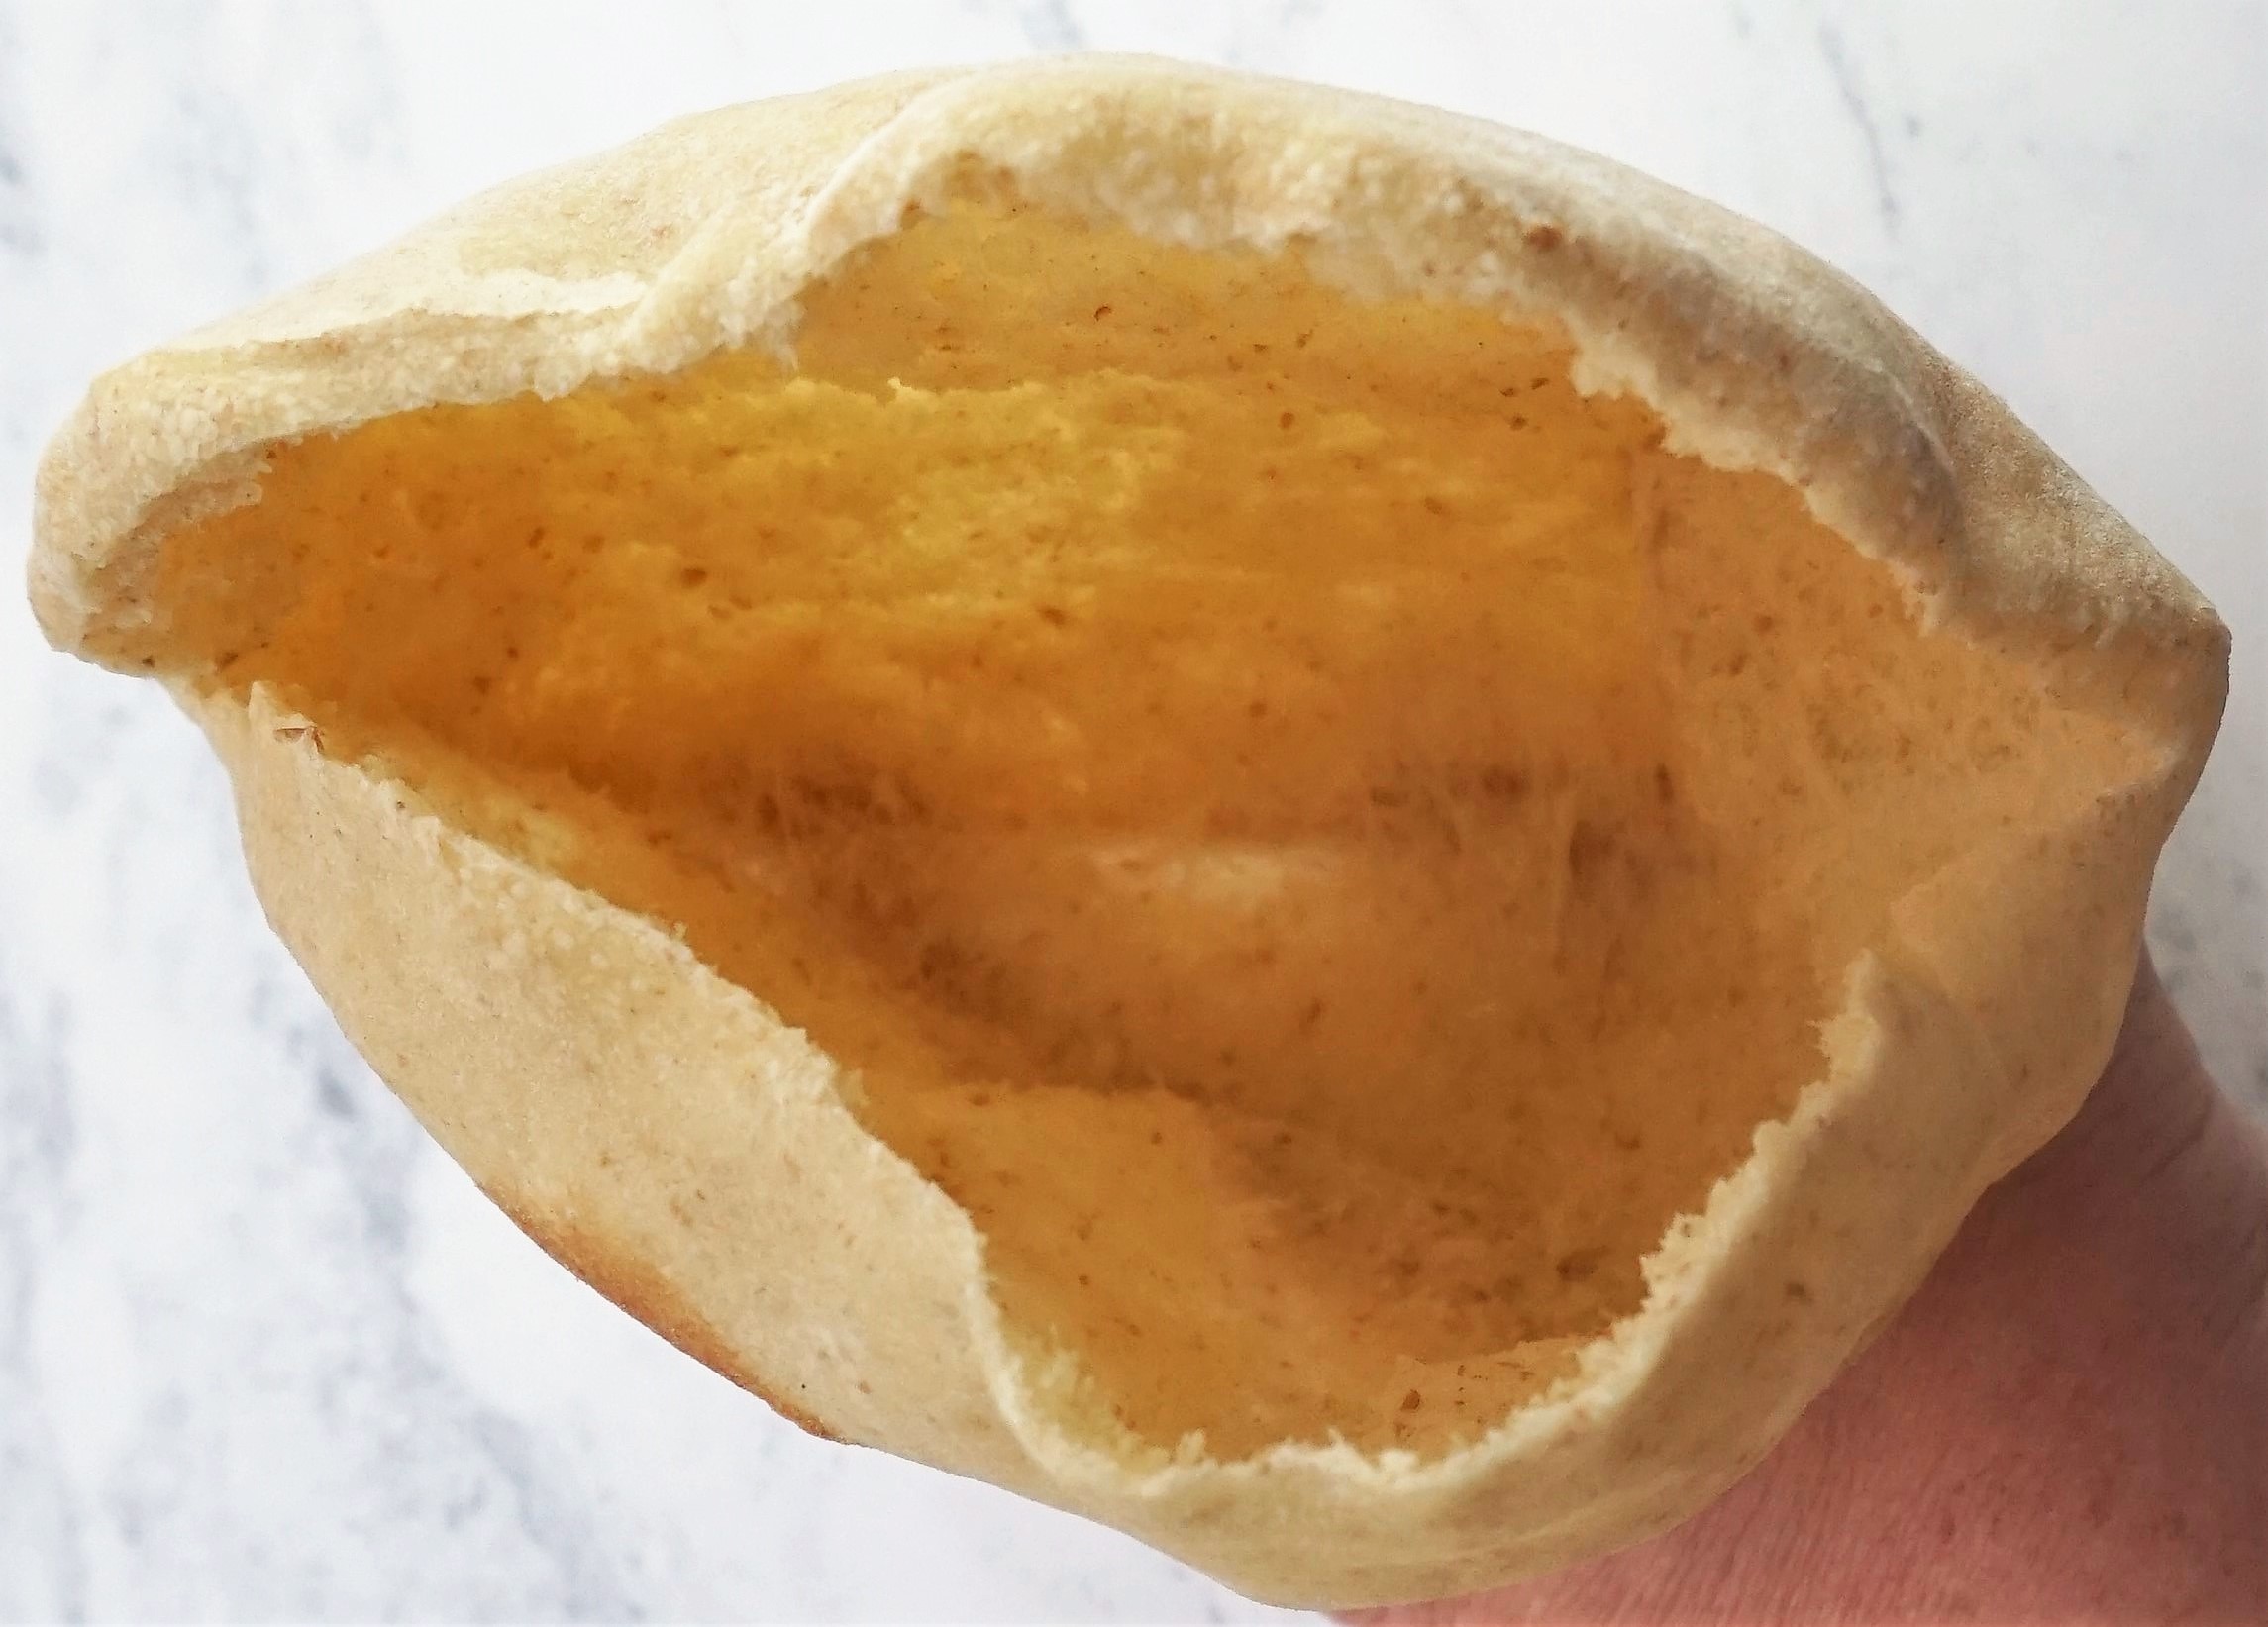 inside the pocket of homemade pitta bread